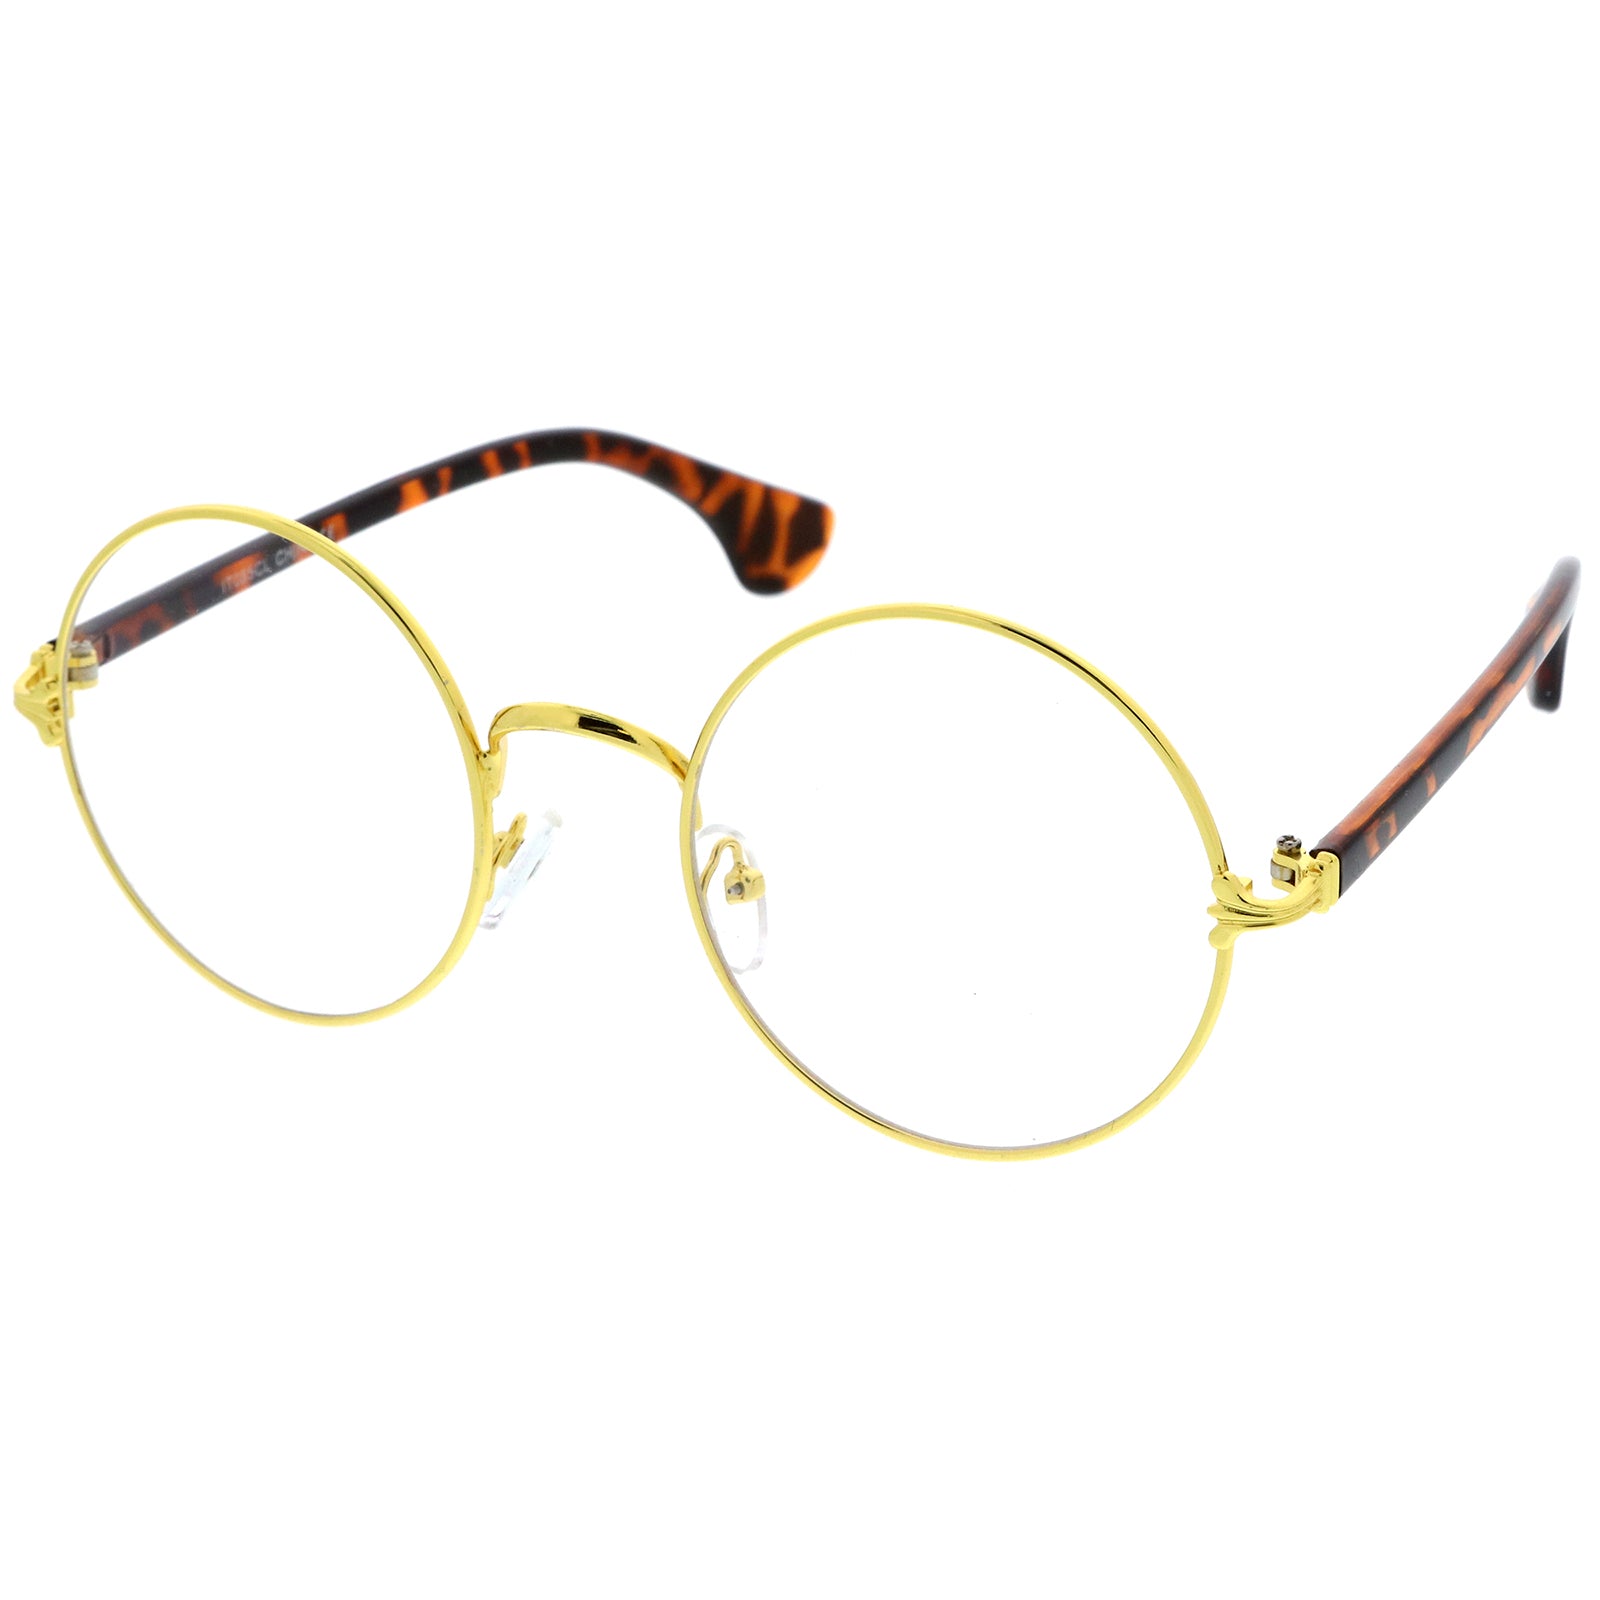 Men's Round Eyeglasses & Glasses, Round Shaped Spectacles Frames  for men